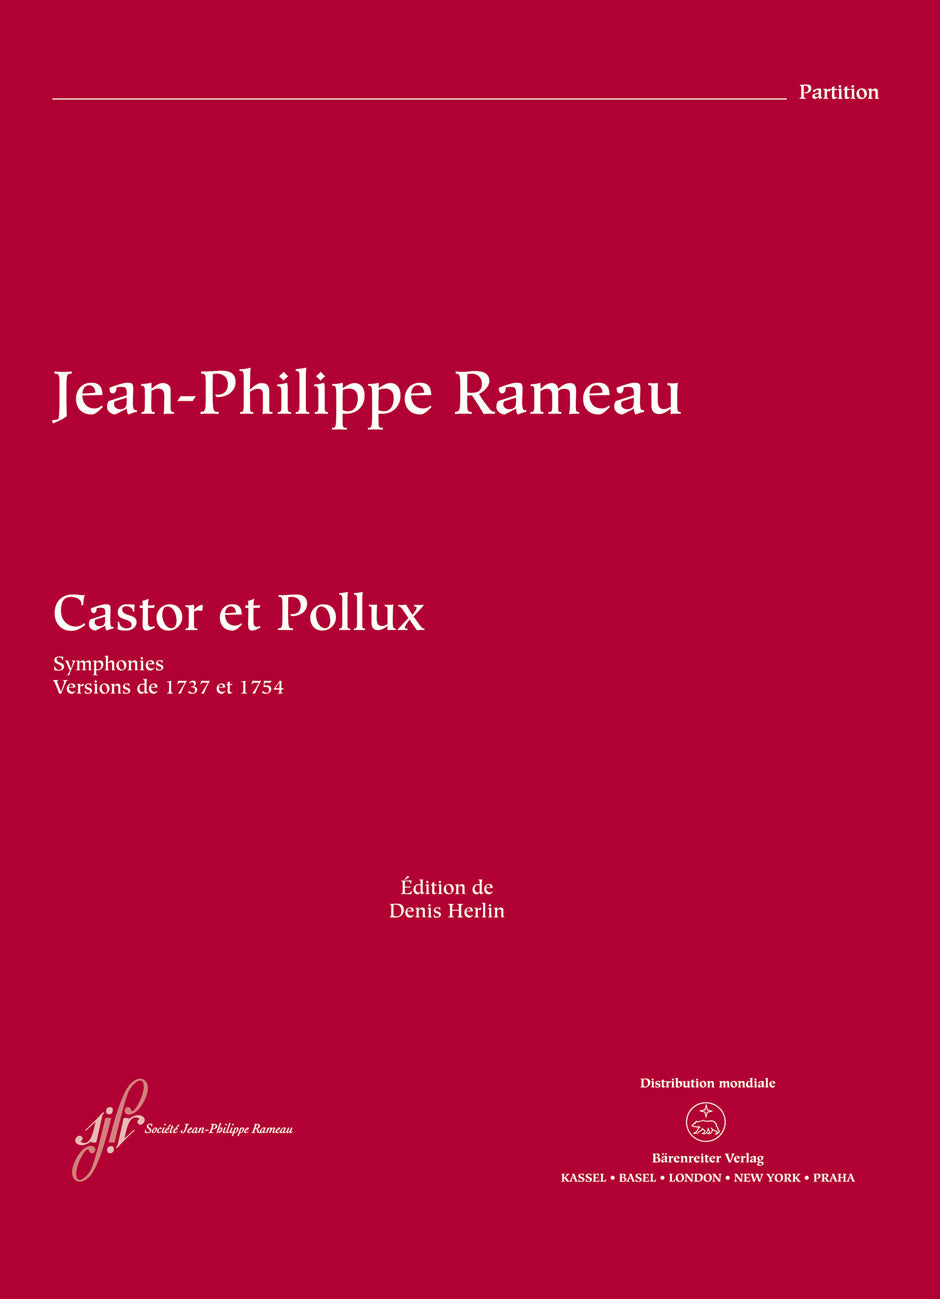 Rameau: Symphonies from Castor et Pollux, RCT 32A-B